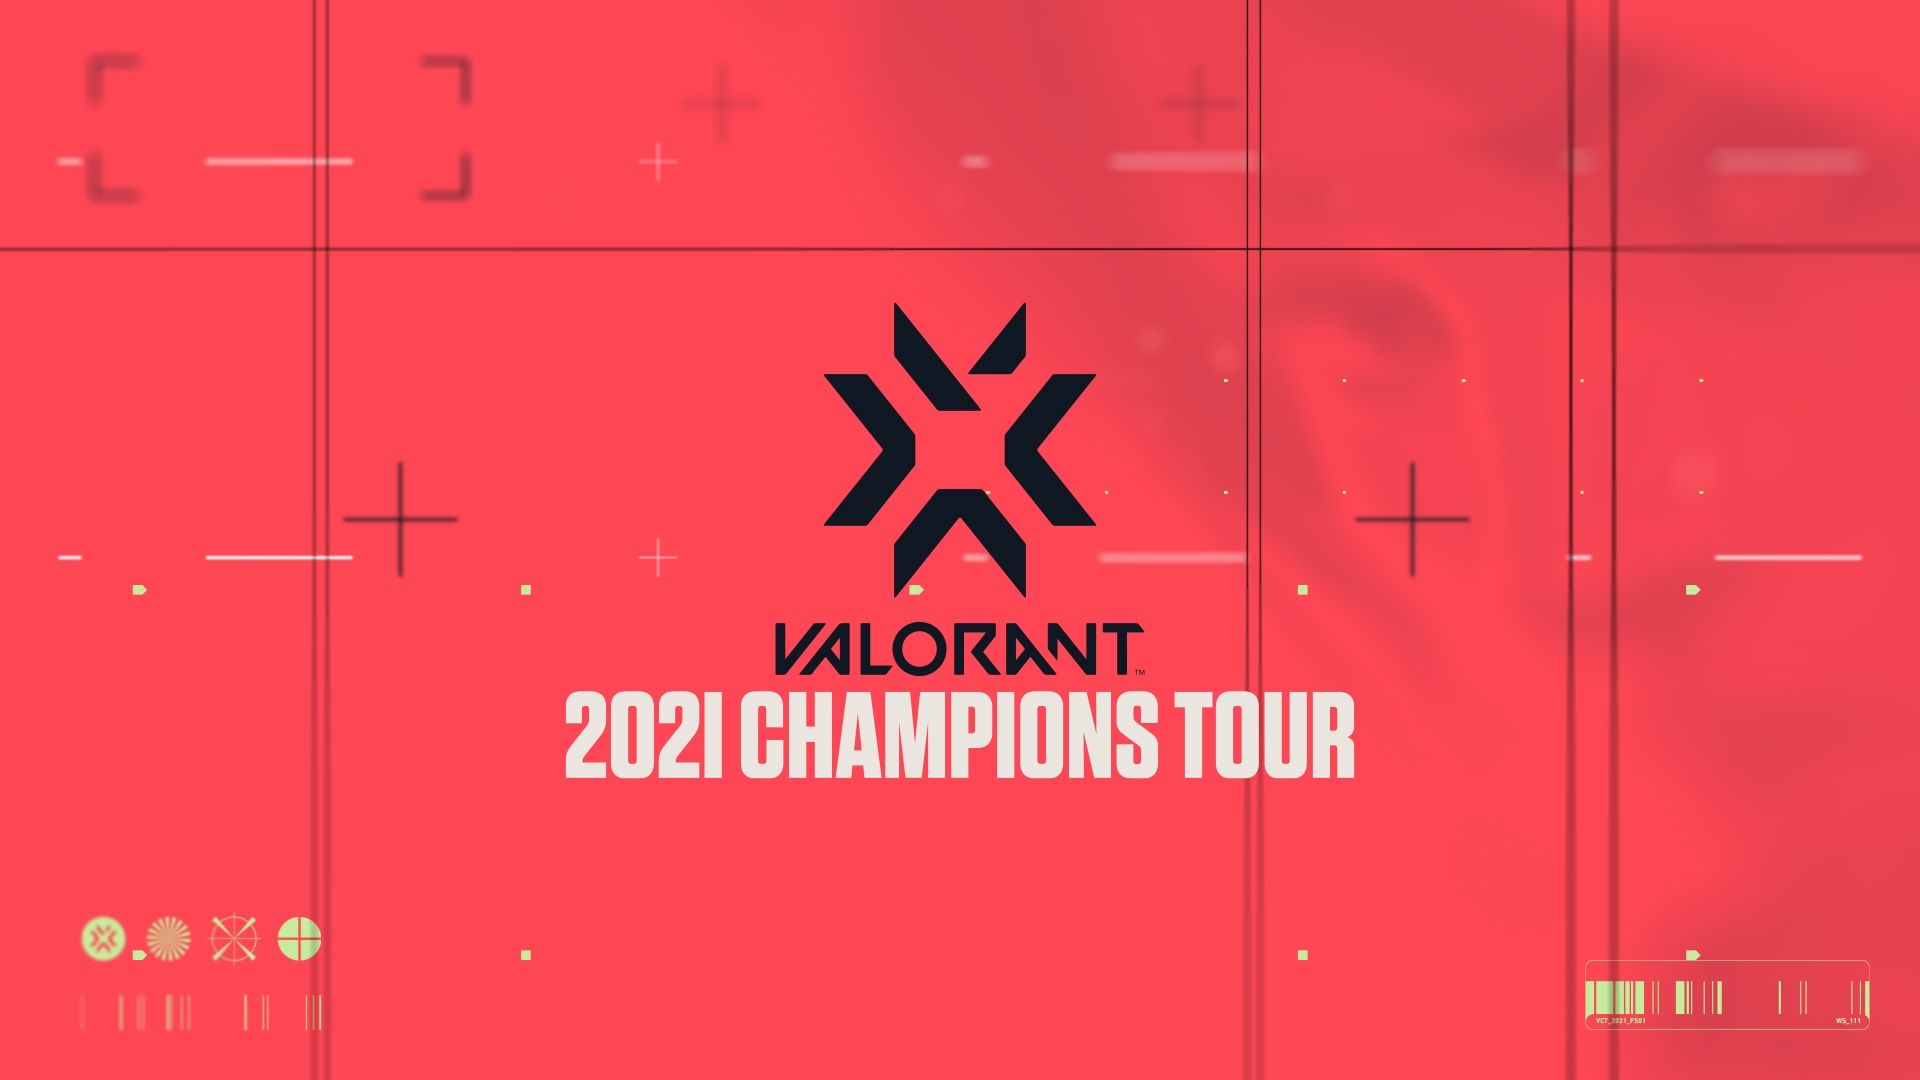 Организаторы VALORANT Champions Tour попросили игроков проявлять уважение к соперникам